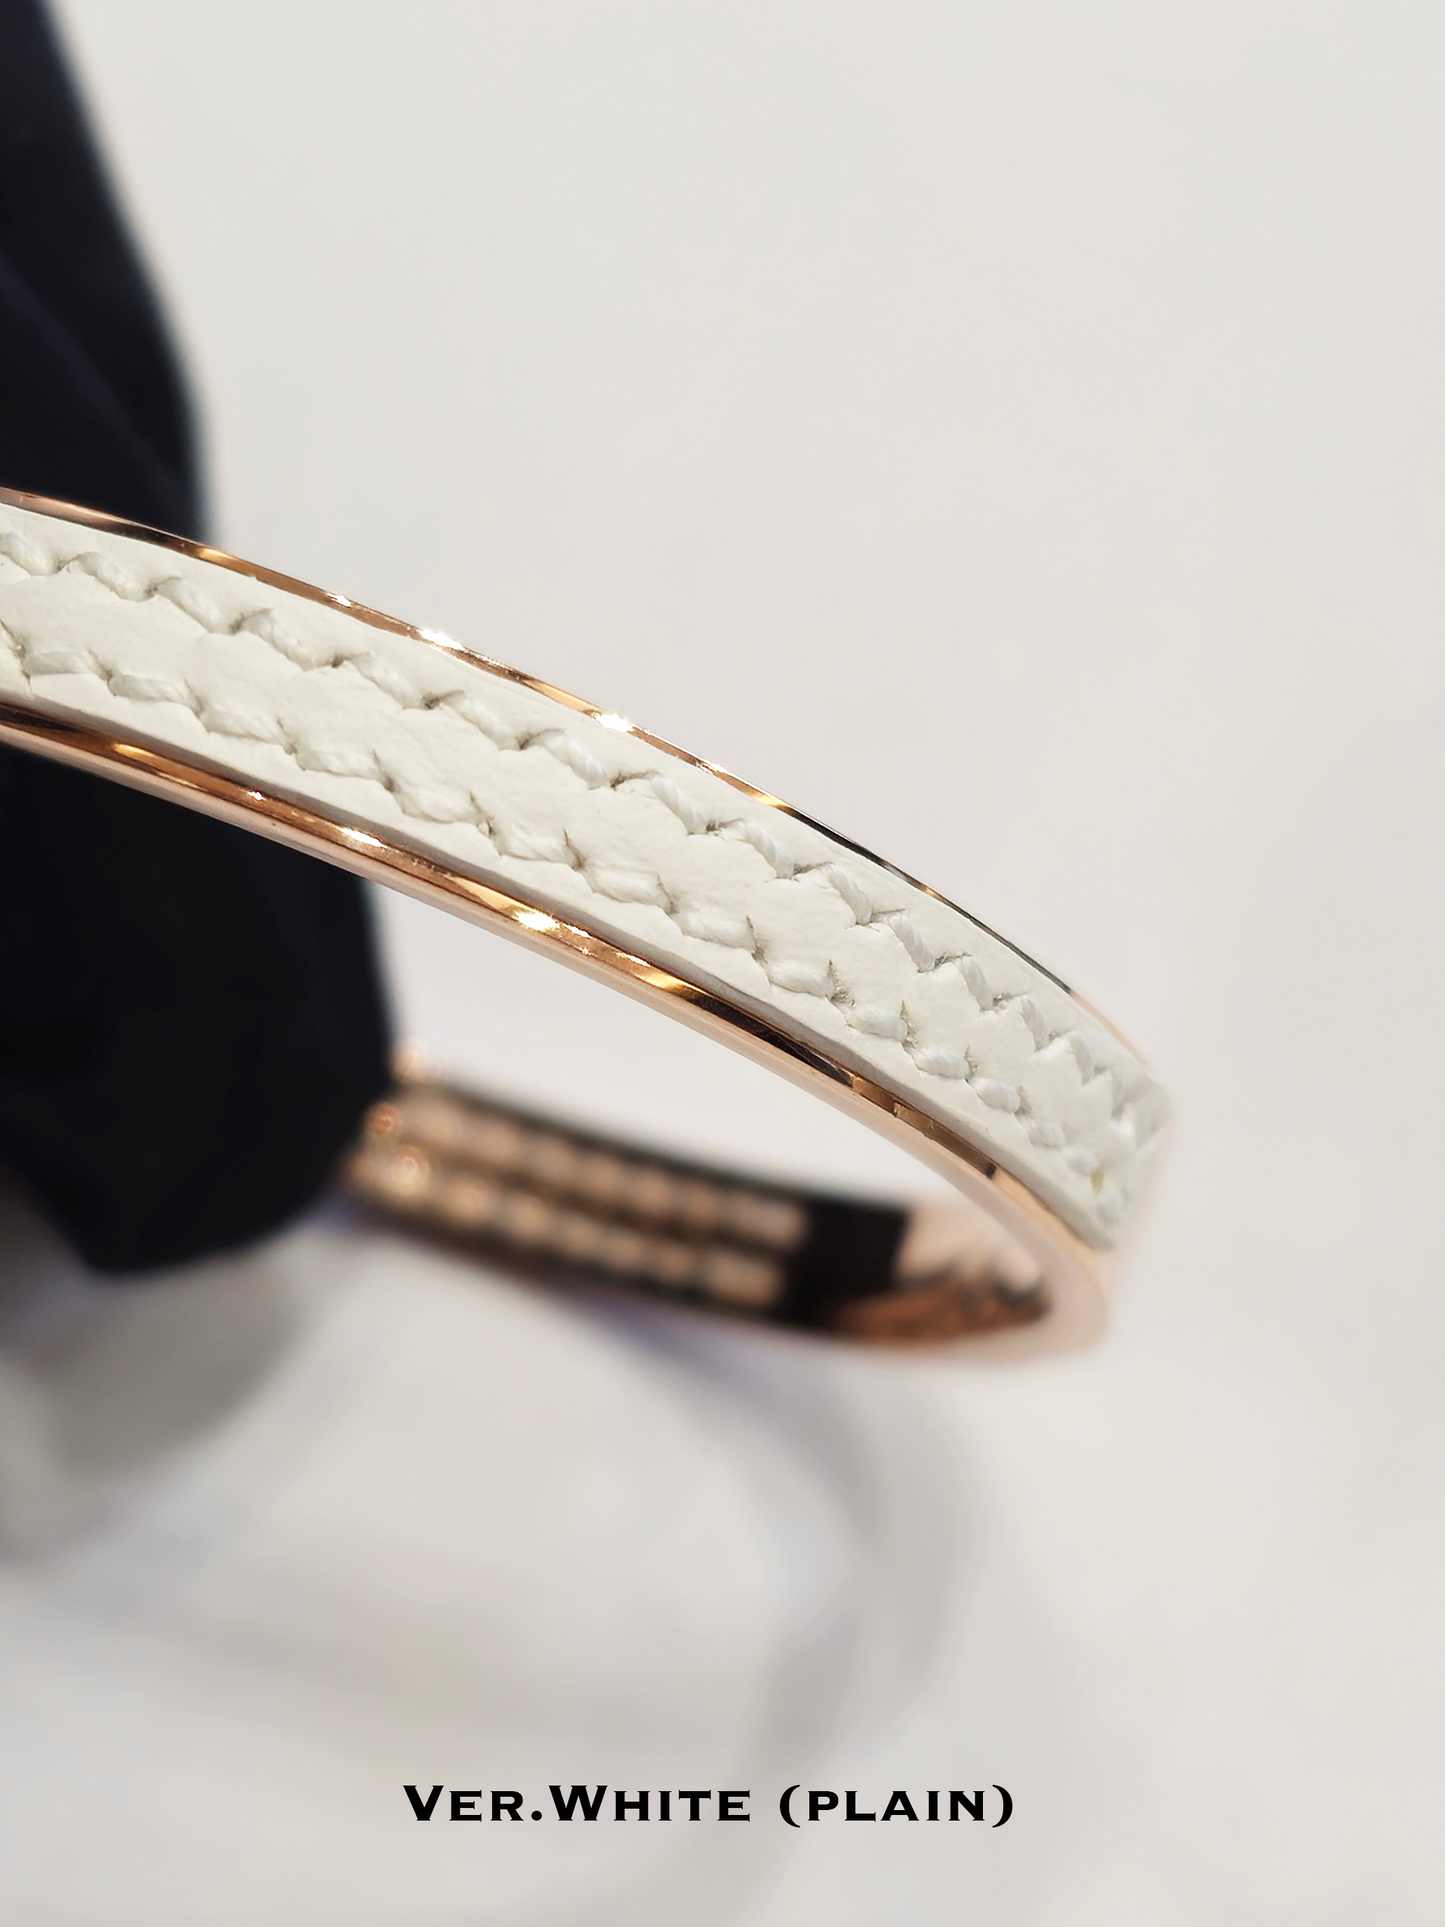 Twined Leather Bracelet, Large, White Texture, White Nacre